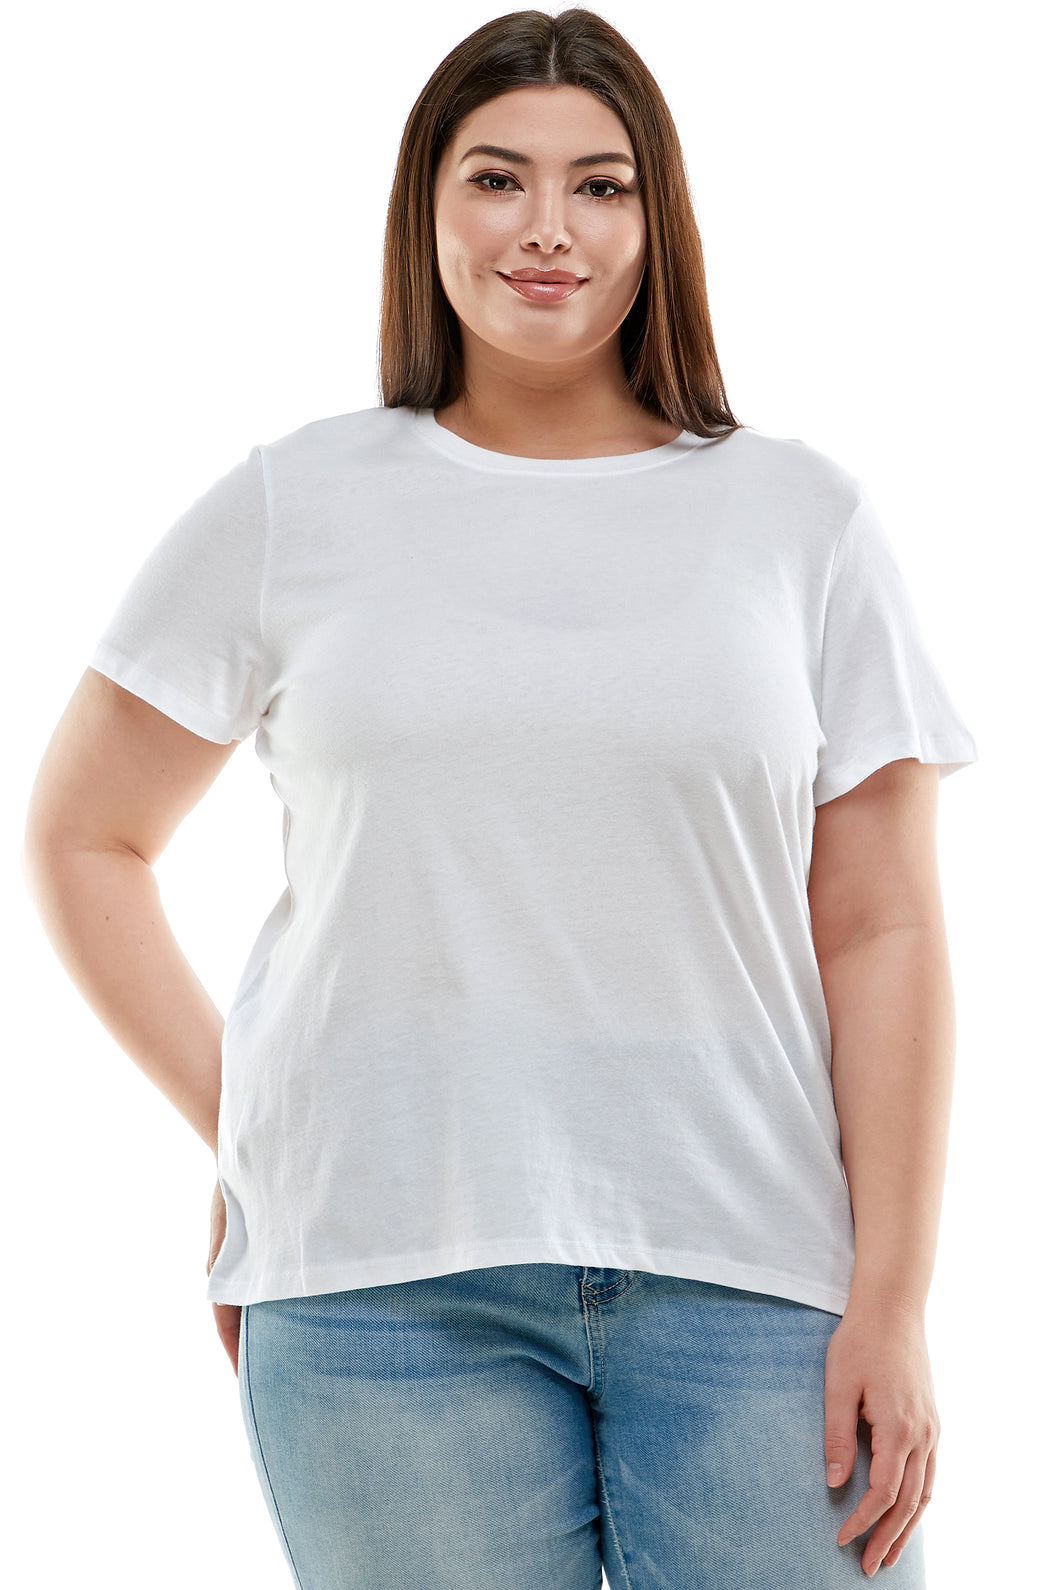 Plus Size Basic Short Sleeve Tee Shirt | White